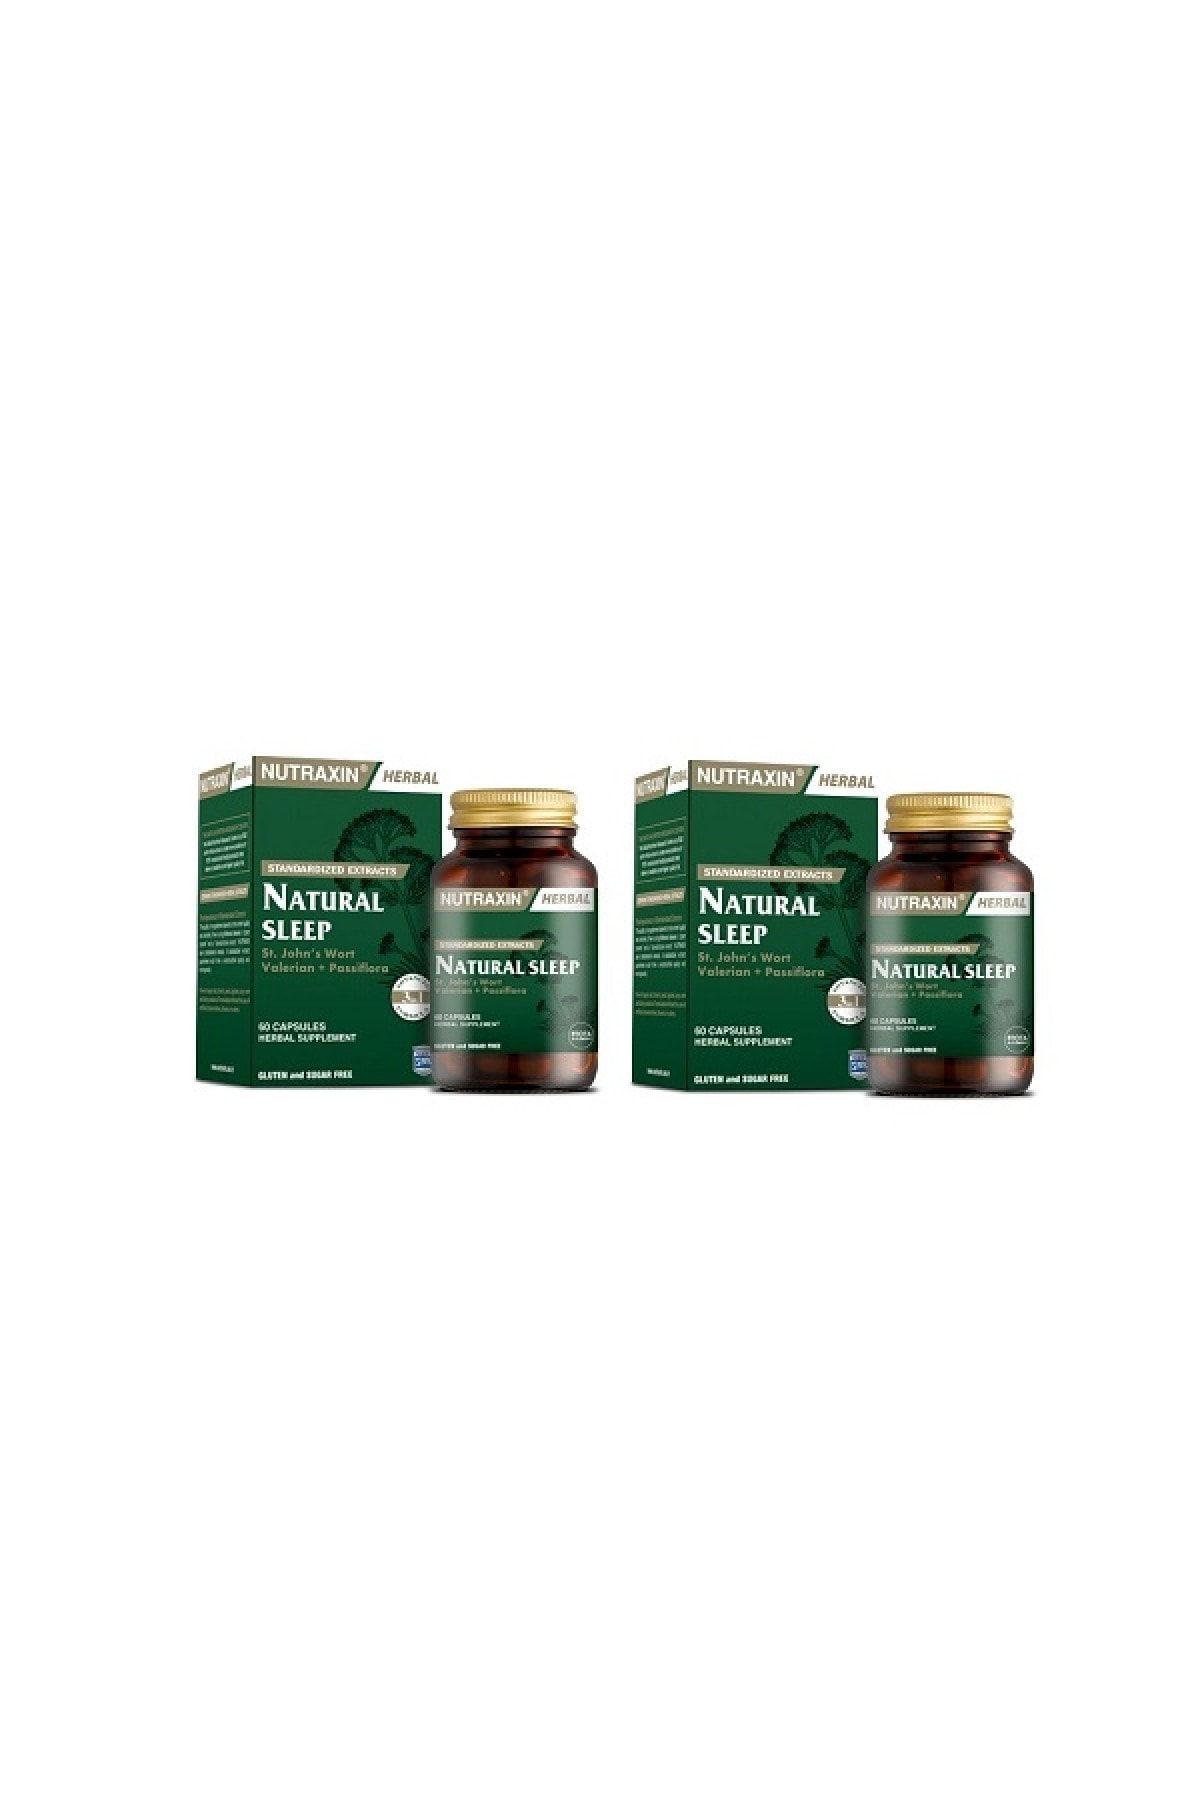 Nutraxin Natural Sleep 60 Tabletx2